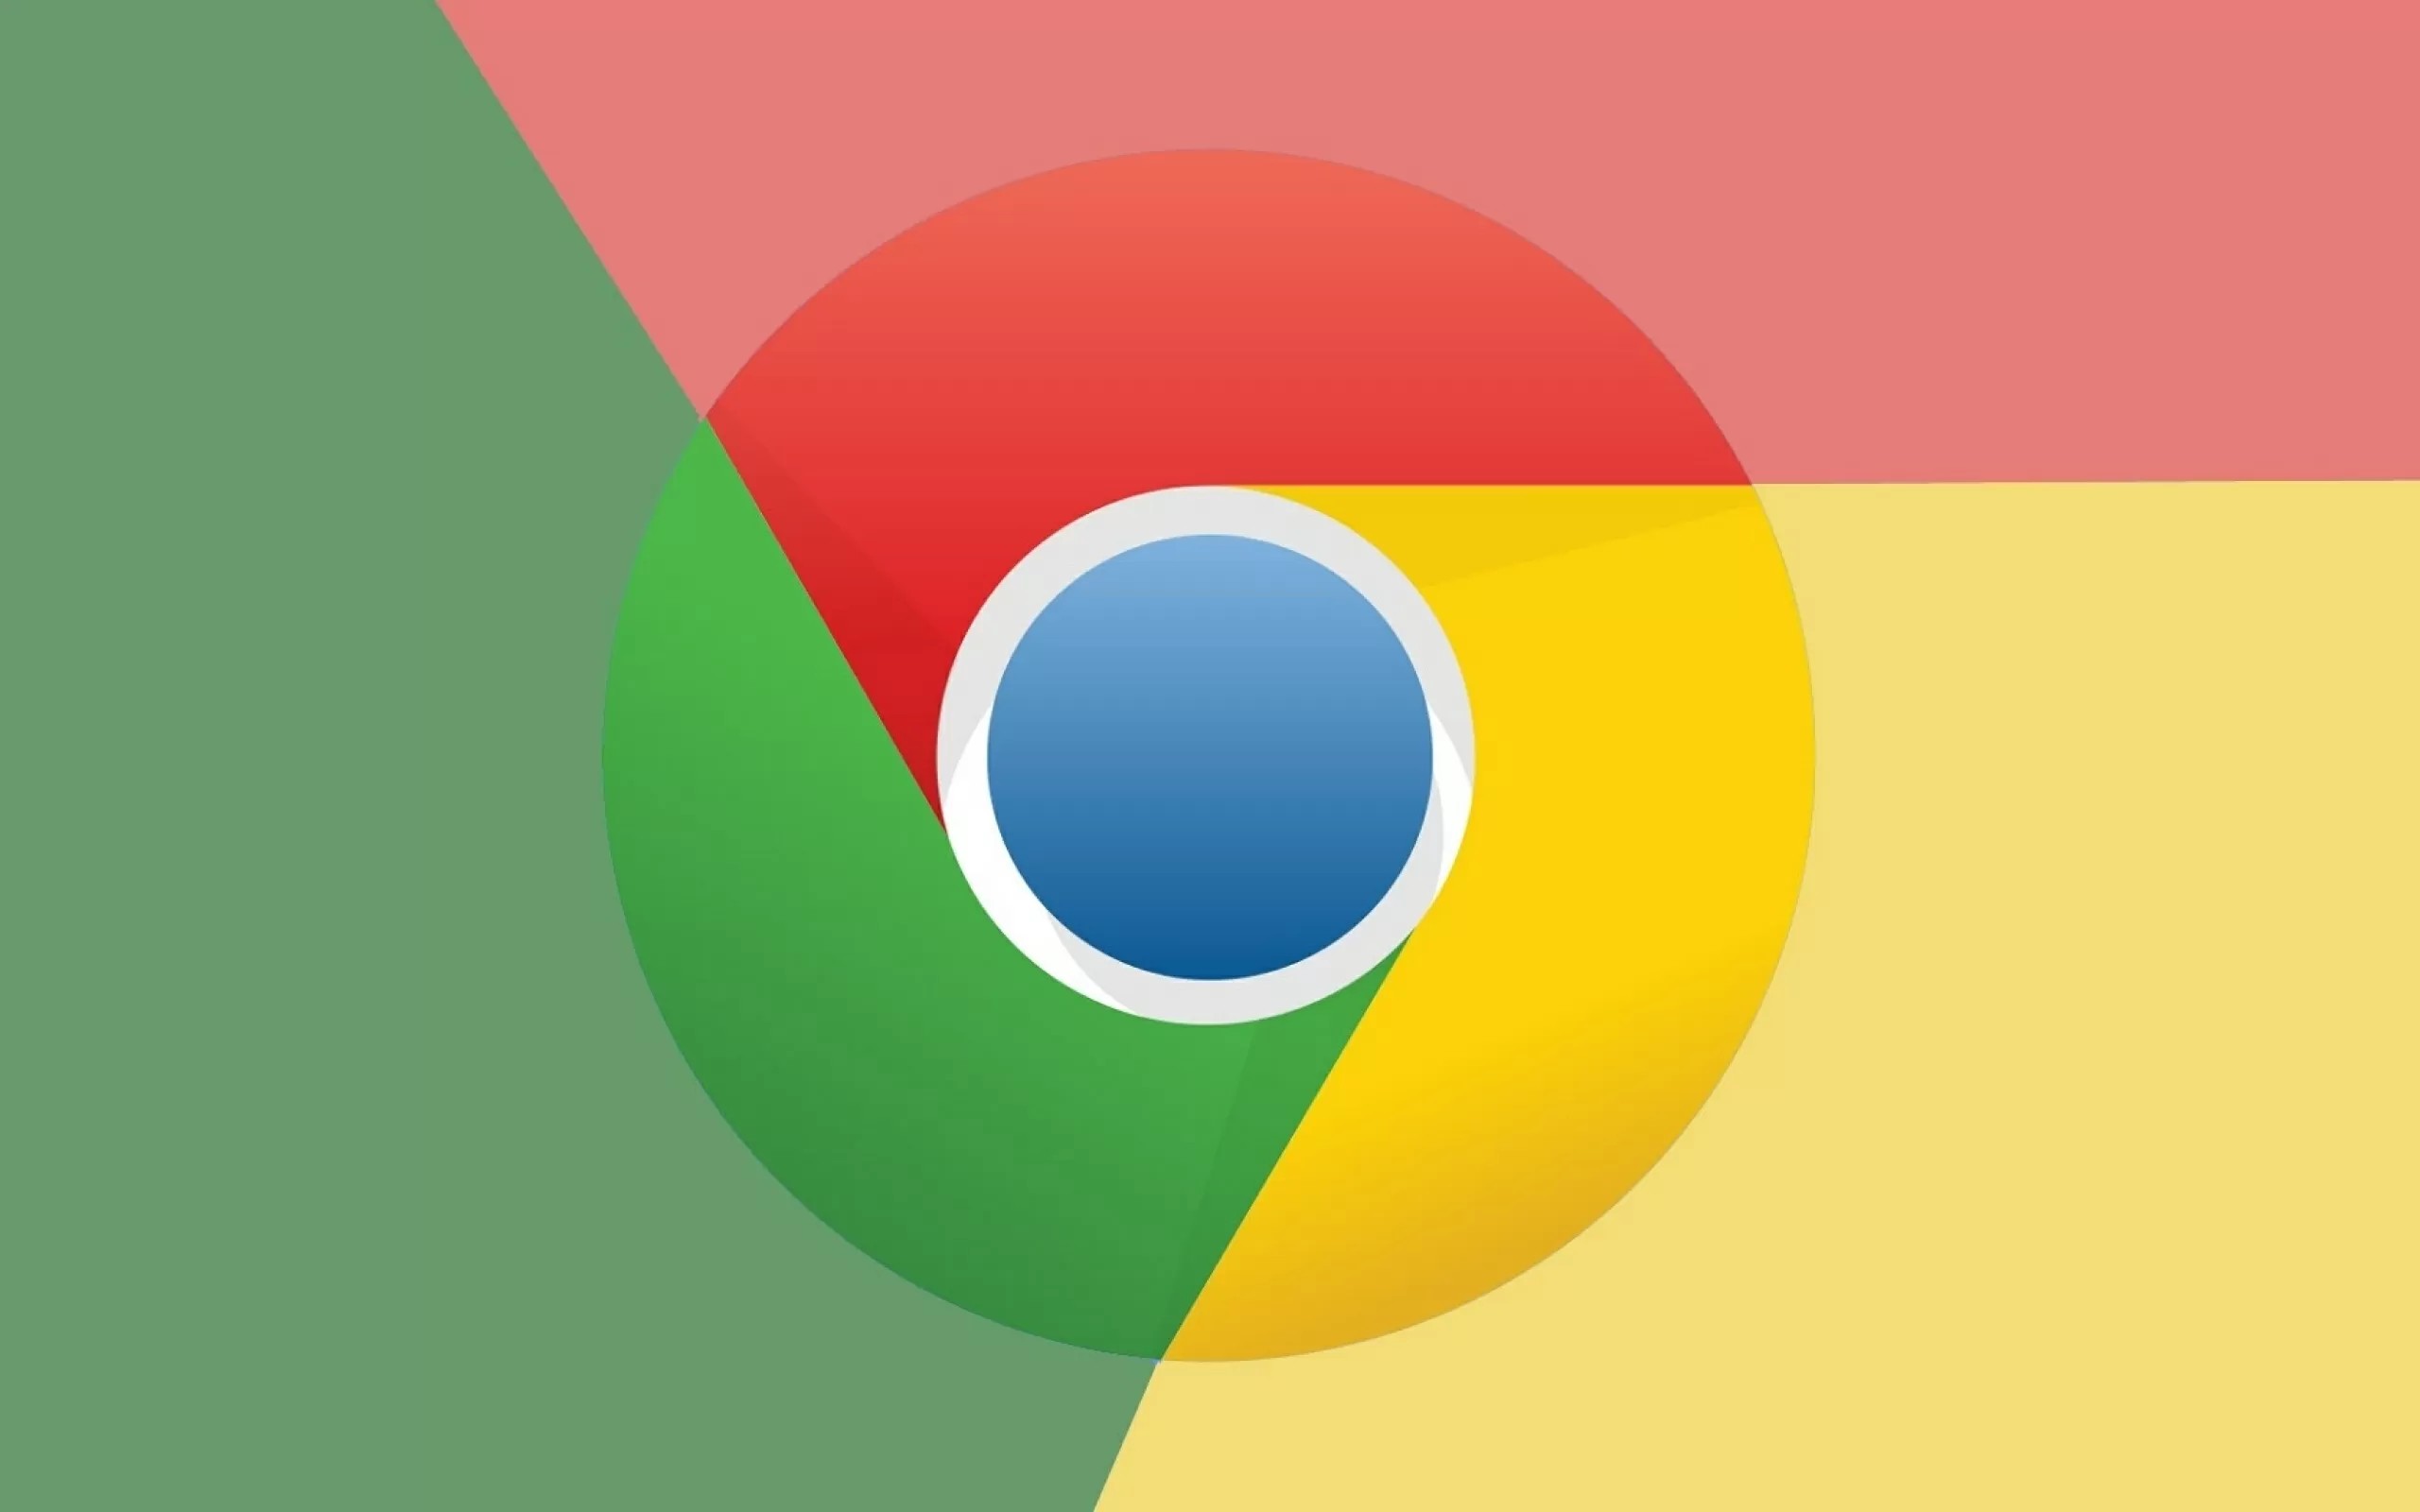 Chrome скоро станет более безопасным благодаря DNS-over-HTTPS